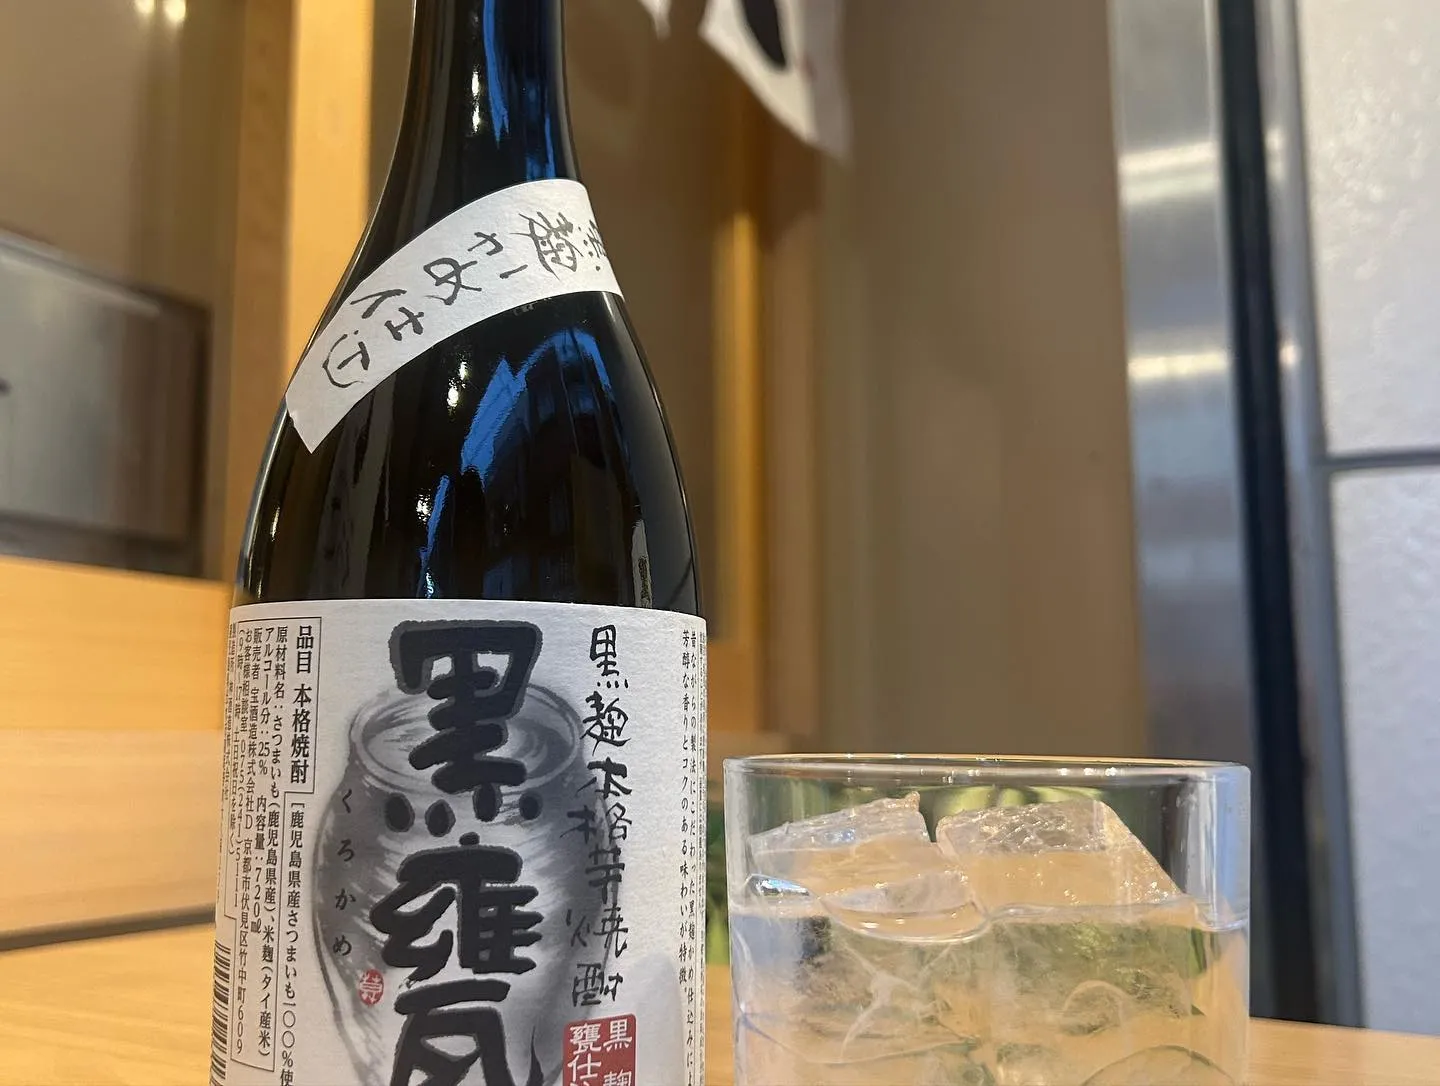 【経堂駅チカ】オシャレ居酒屋🏮出汁が美味しいおでんがオススメ...